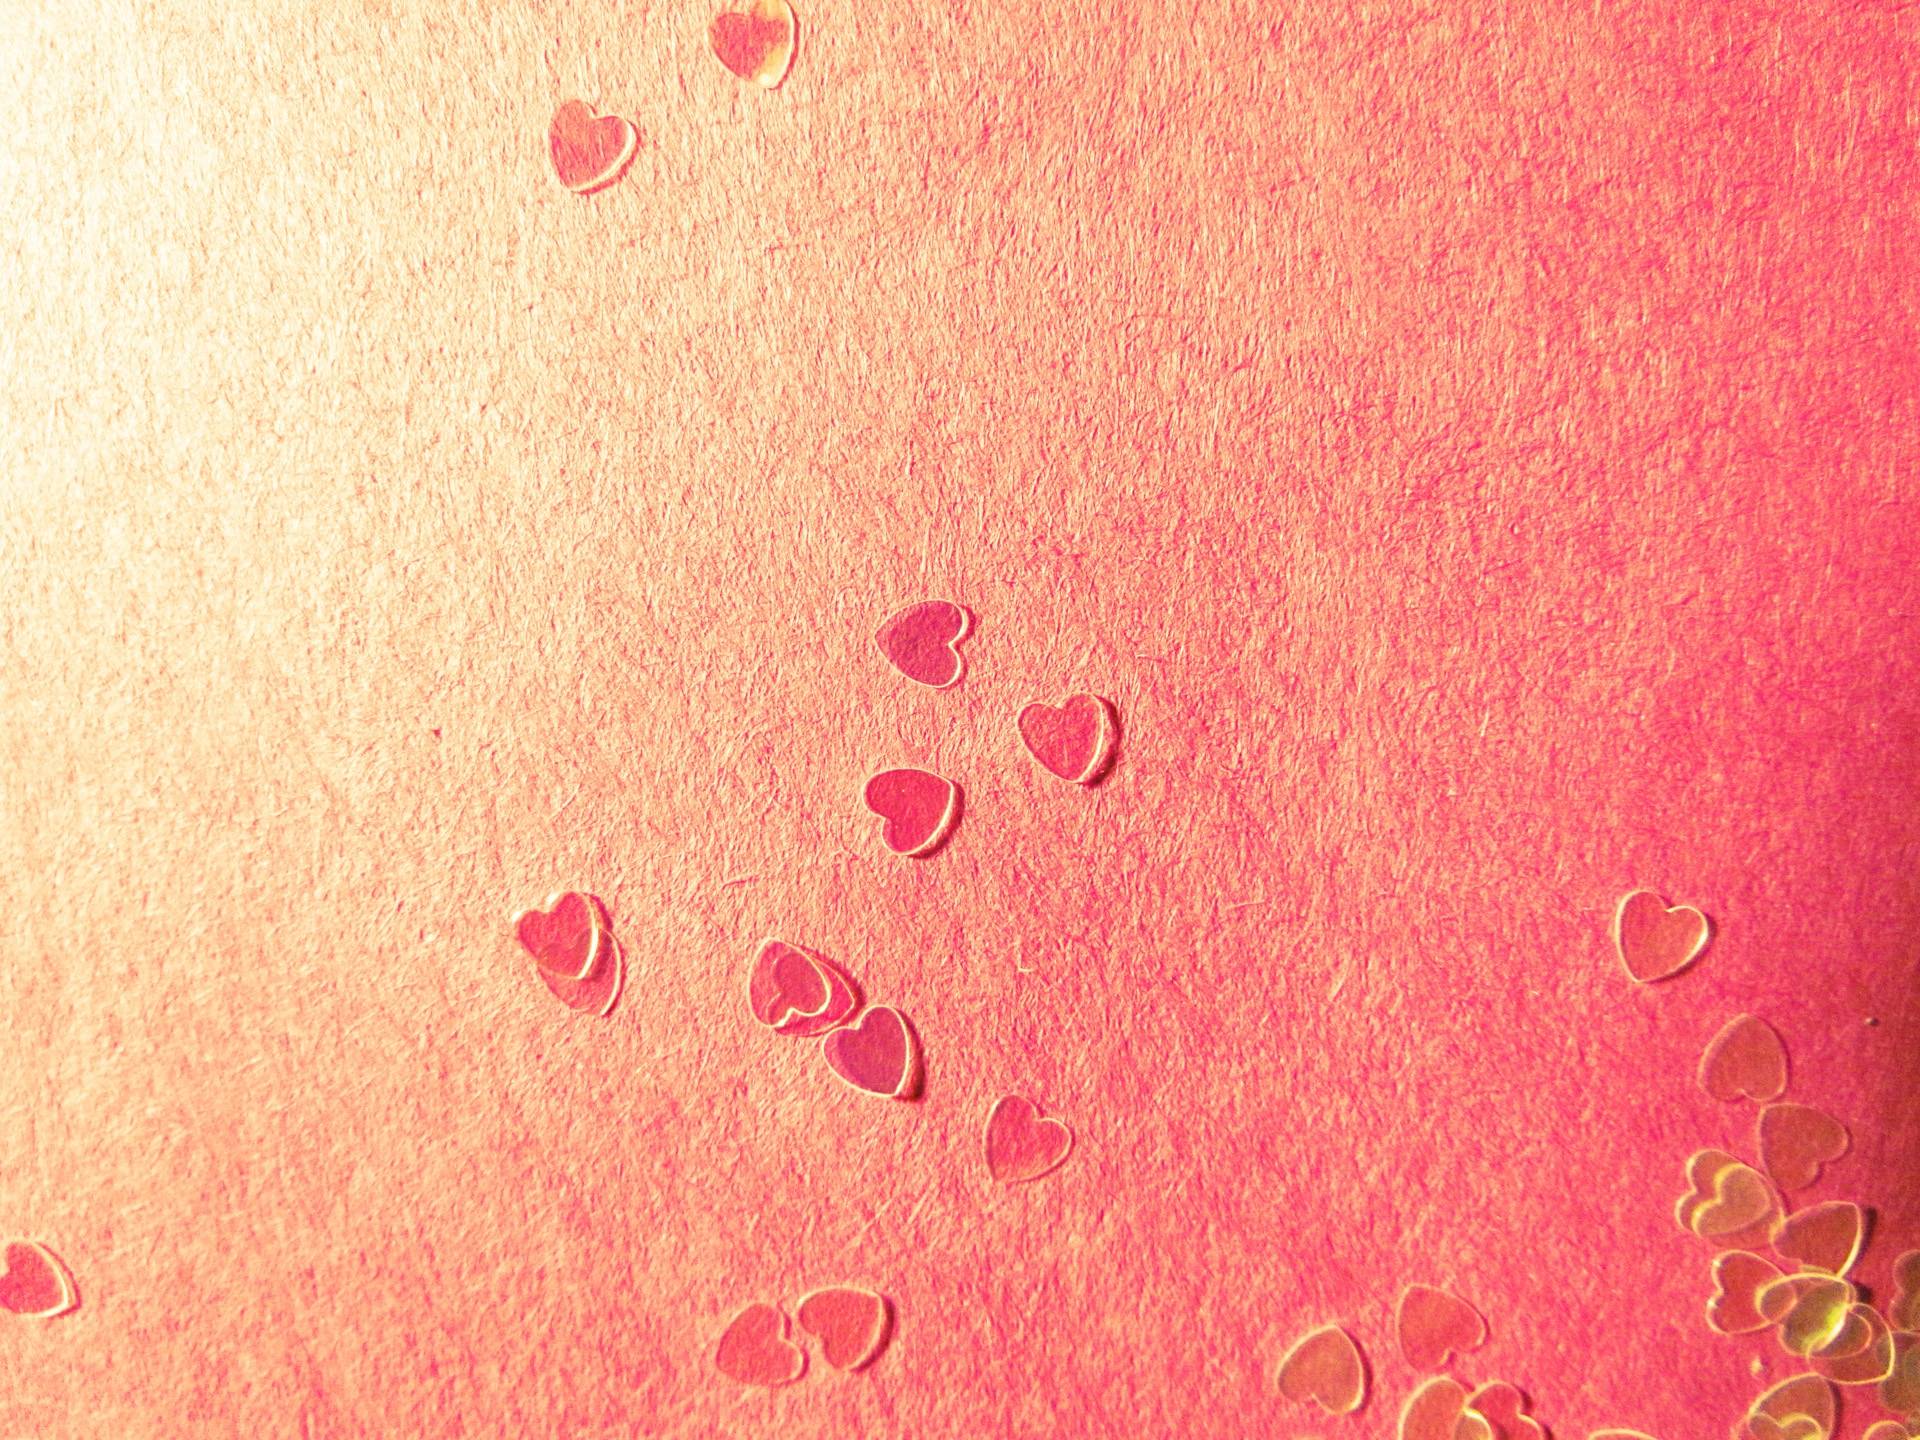 At Heart Desktop Wallpaper Background 1920x1440PX Wallpaper